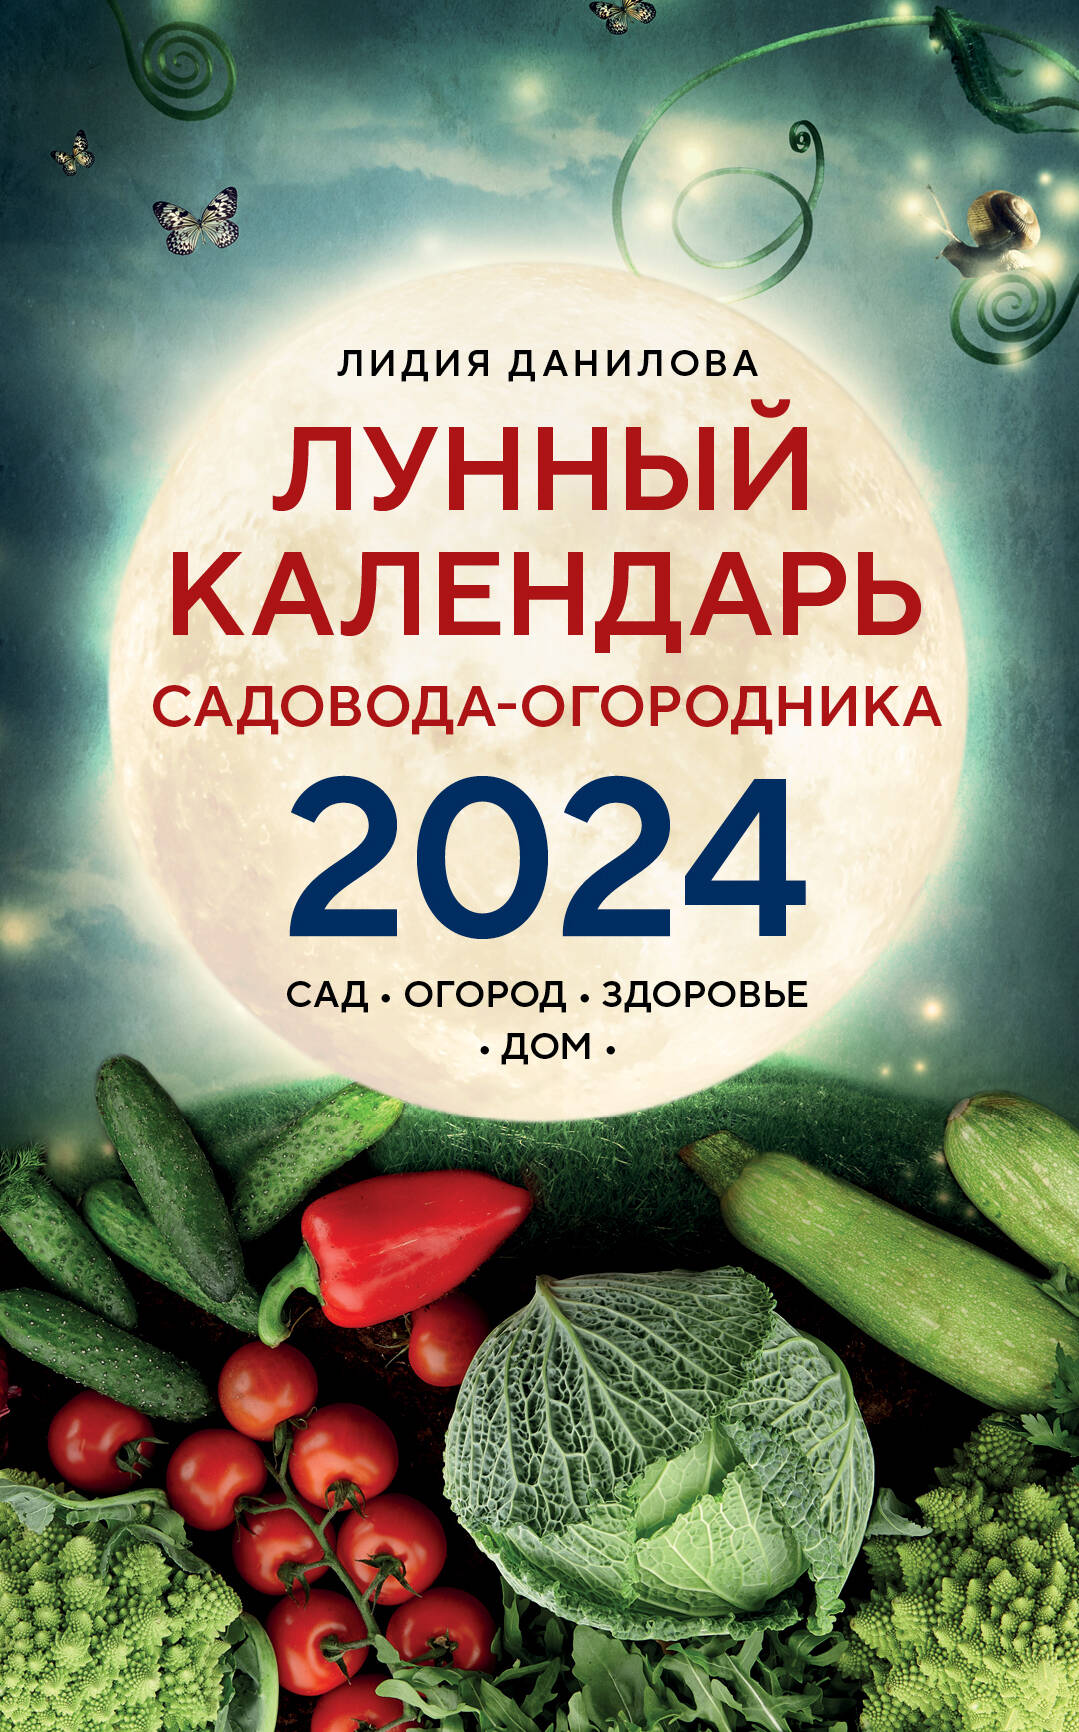 Данилова Лидия Владимировна Лунный календарь садовода-огородника 2024